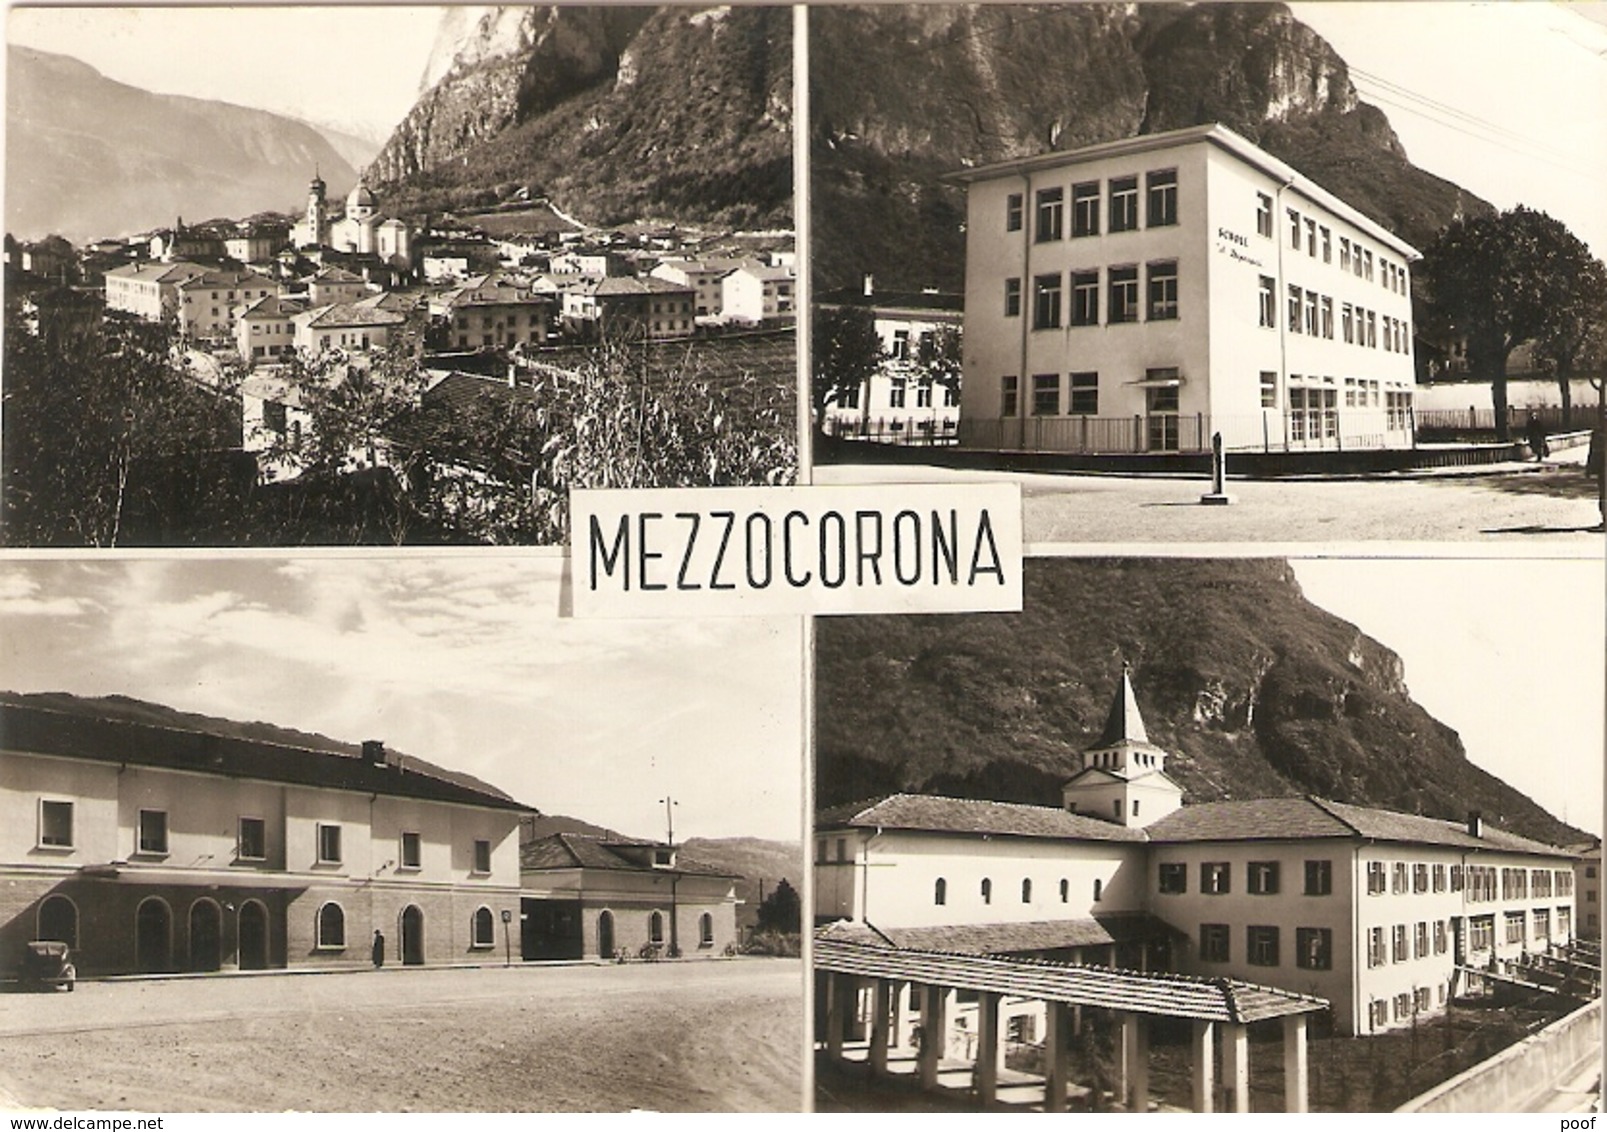 Mezzocorona : Multi Vieuw 1959 - Trento